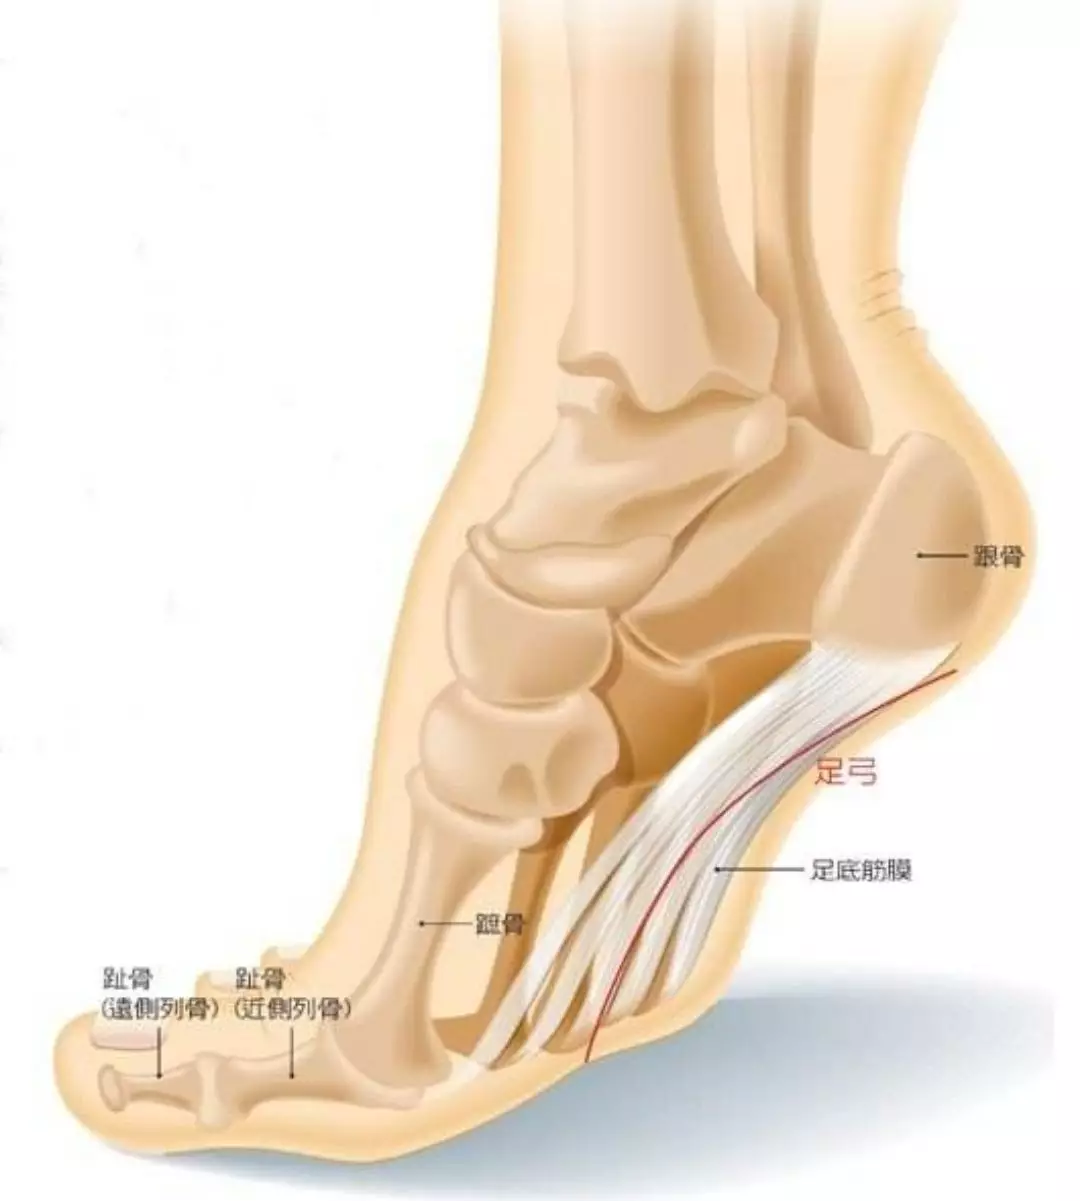 脚筋结构图片